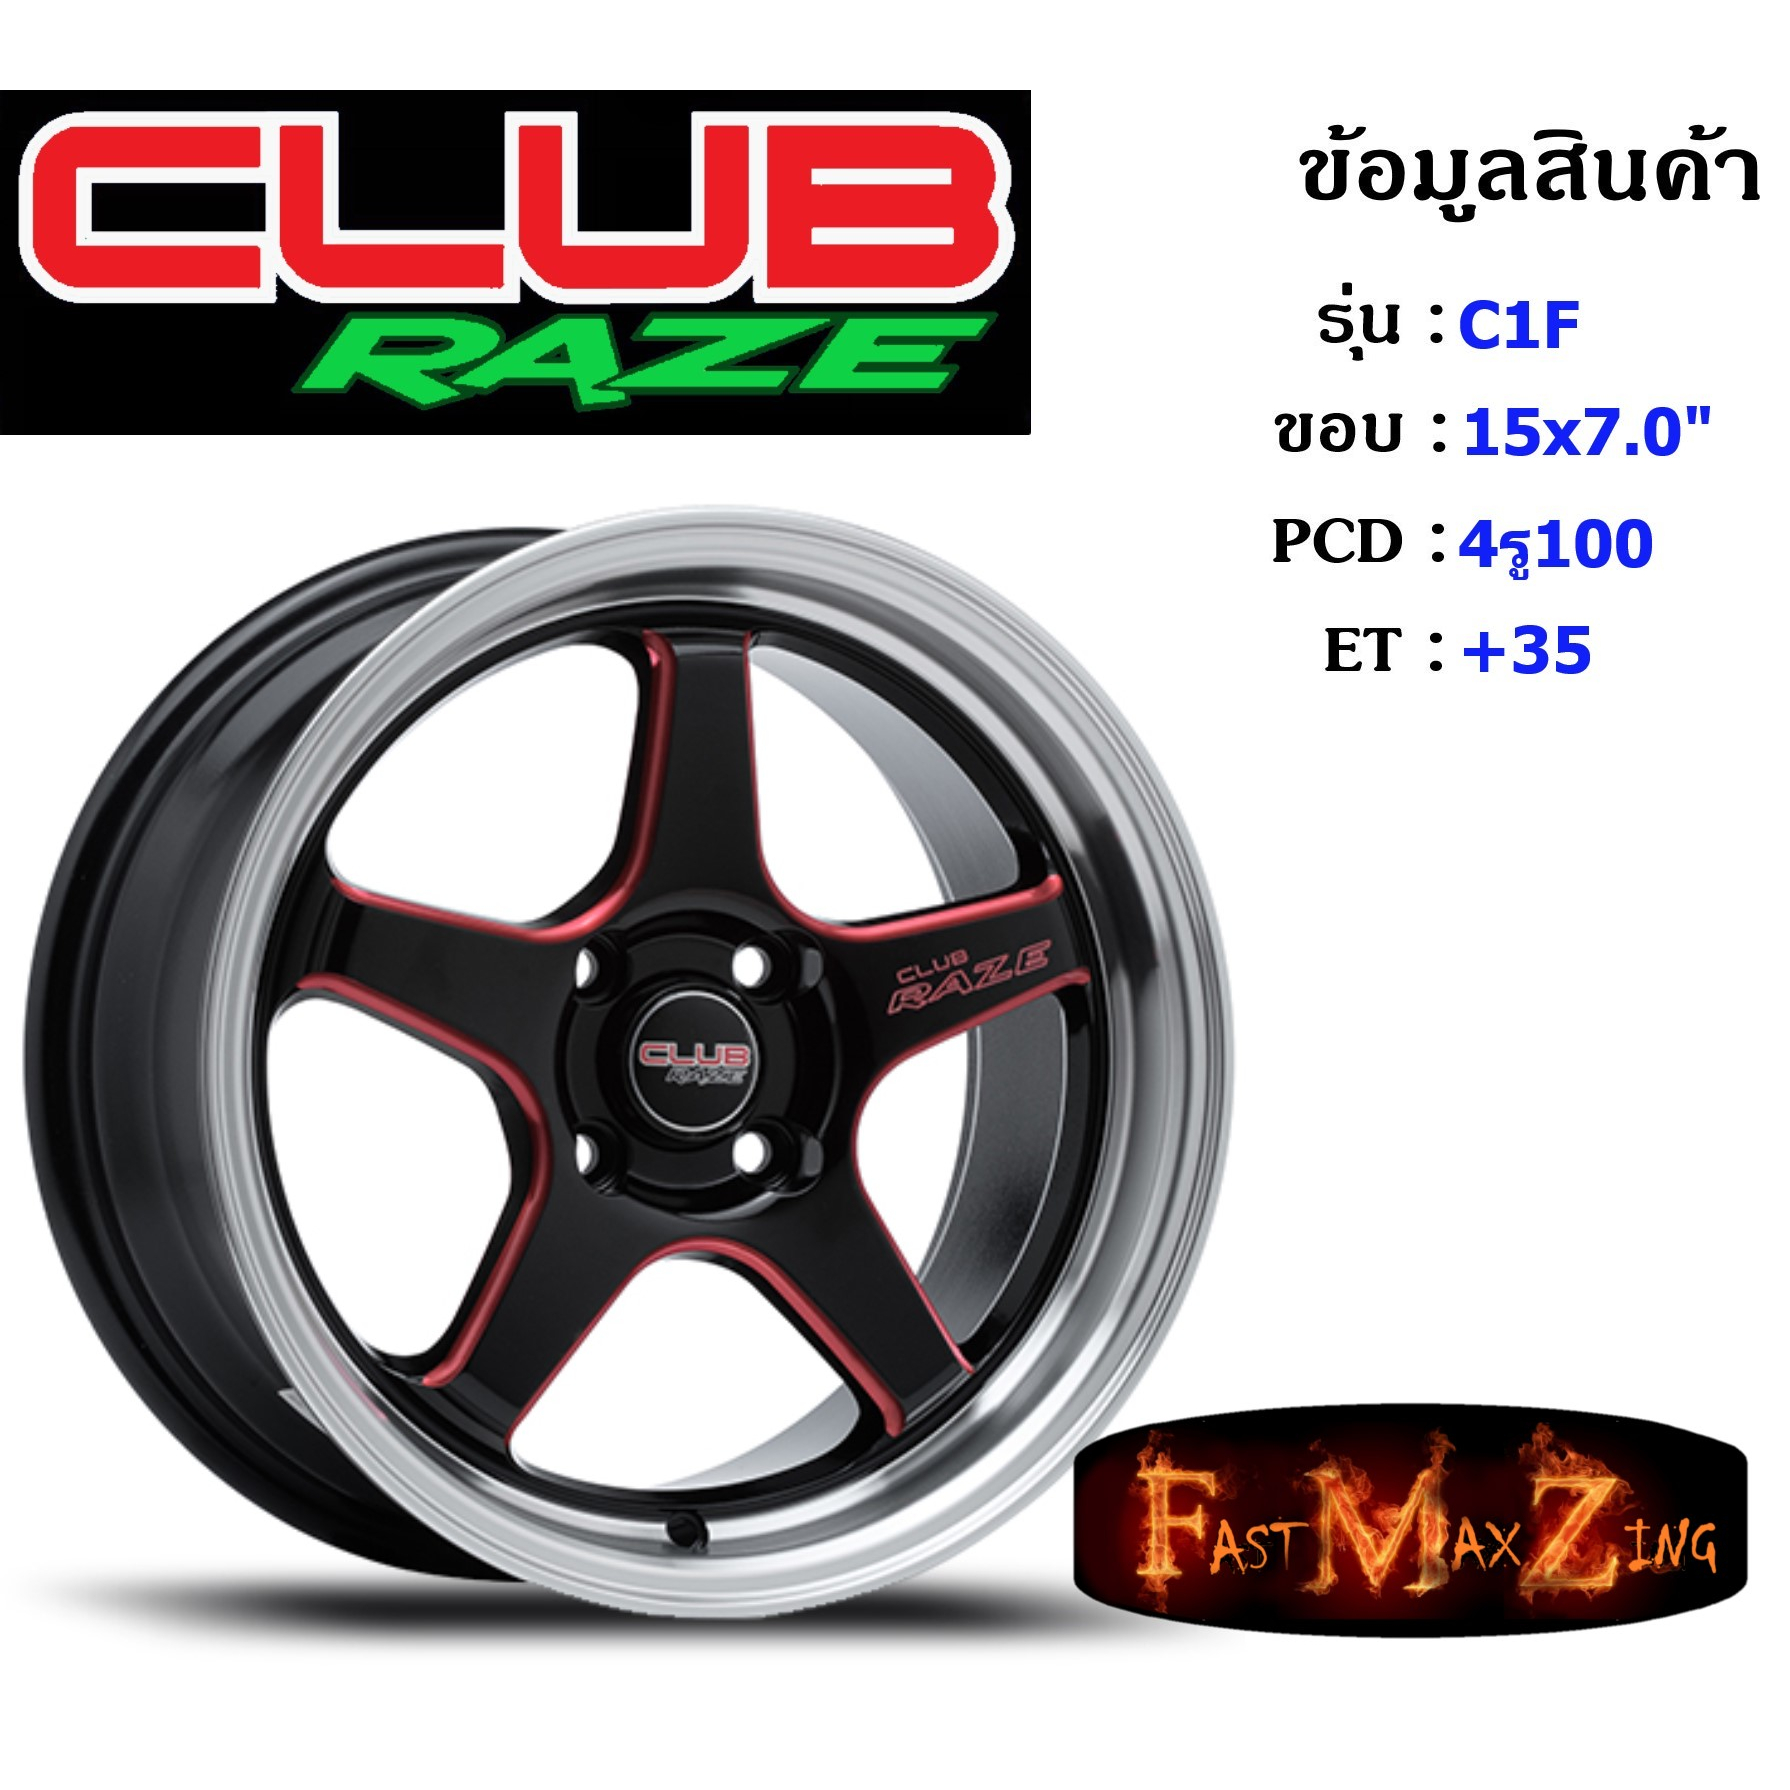 Club Race Wheel C1F ขอบ 15x7.5" 4รู100 ET+35 สีGBSR ล้อแม็ก แม็กรถยนต์ขอบ15 แม็กขอบ15